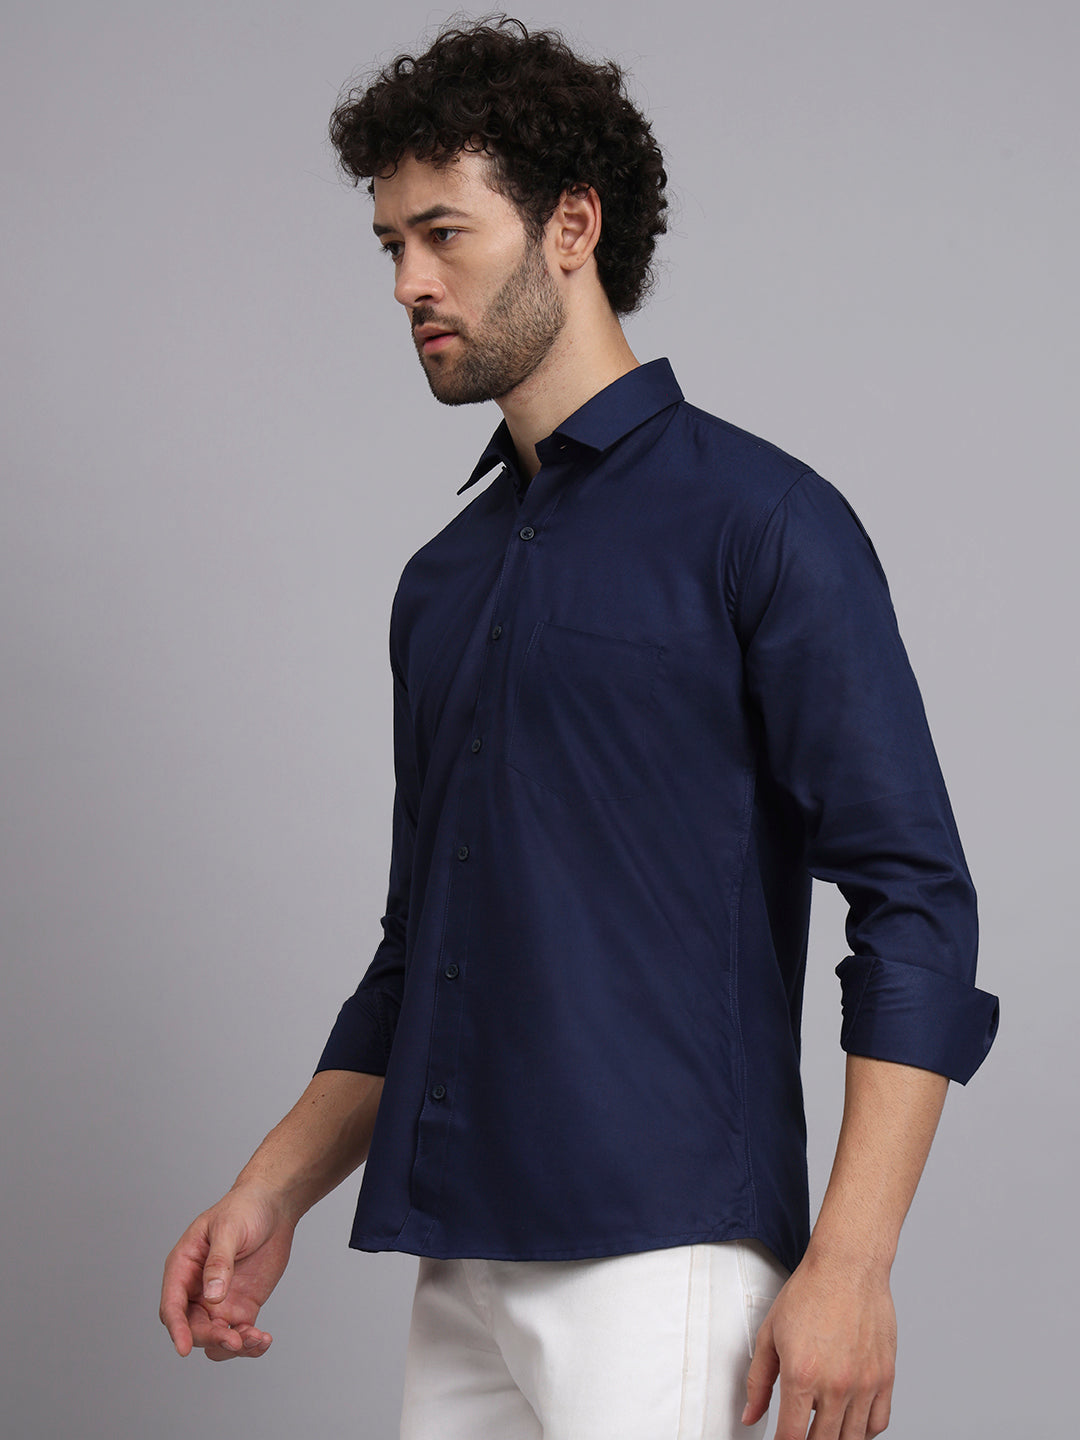 Deluxe Plain Navy Blue Formal Shirt